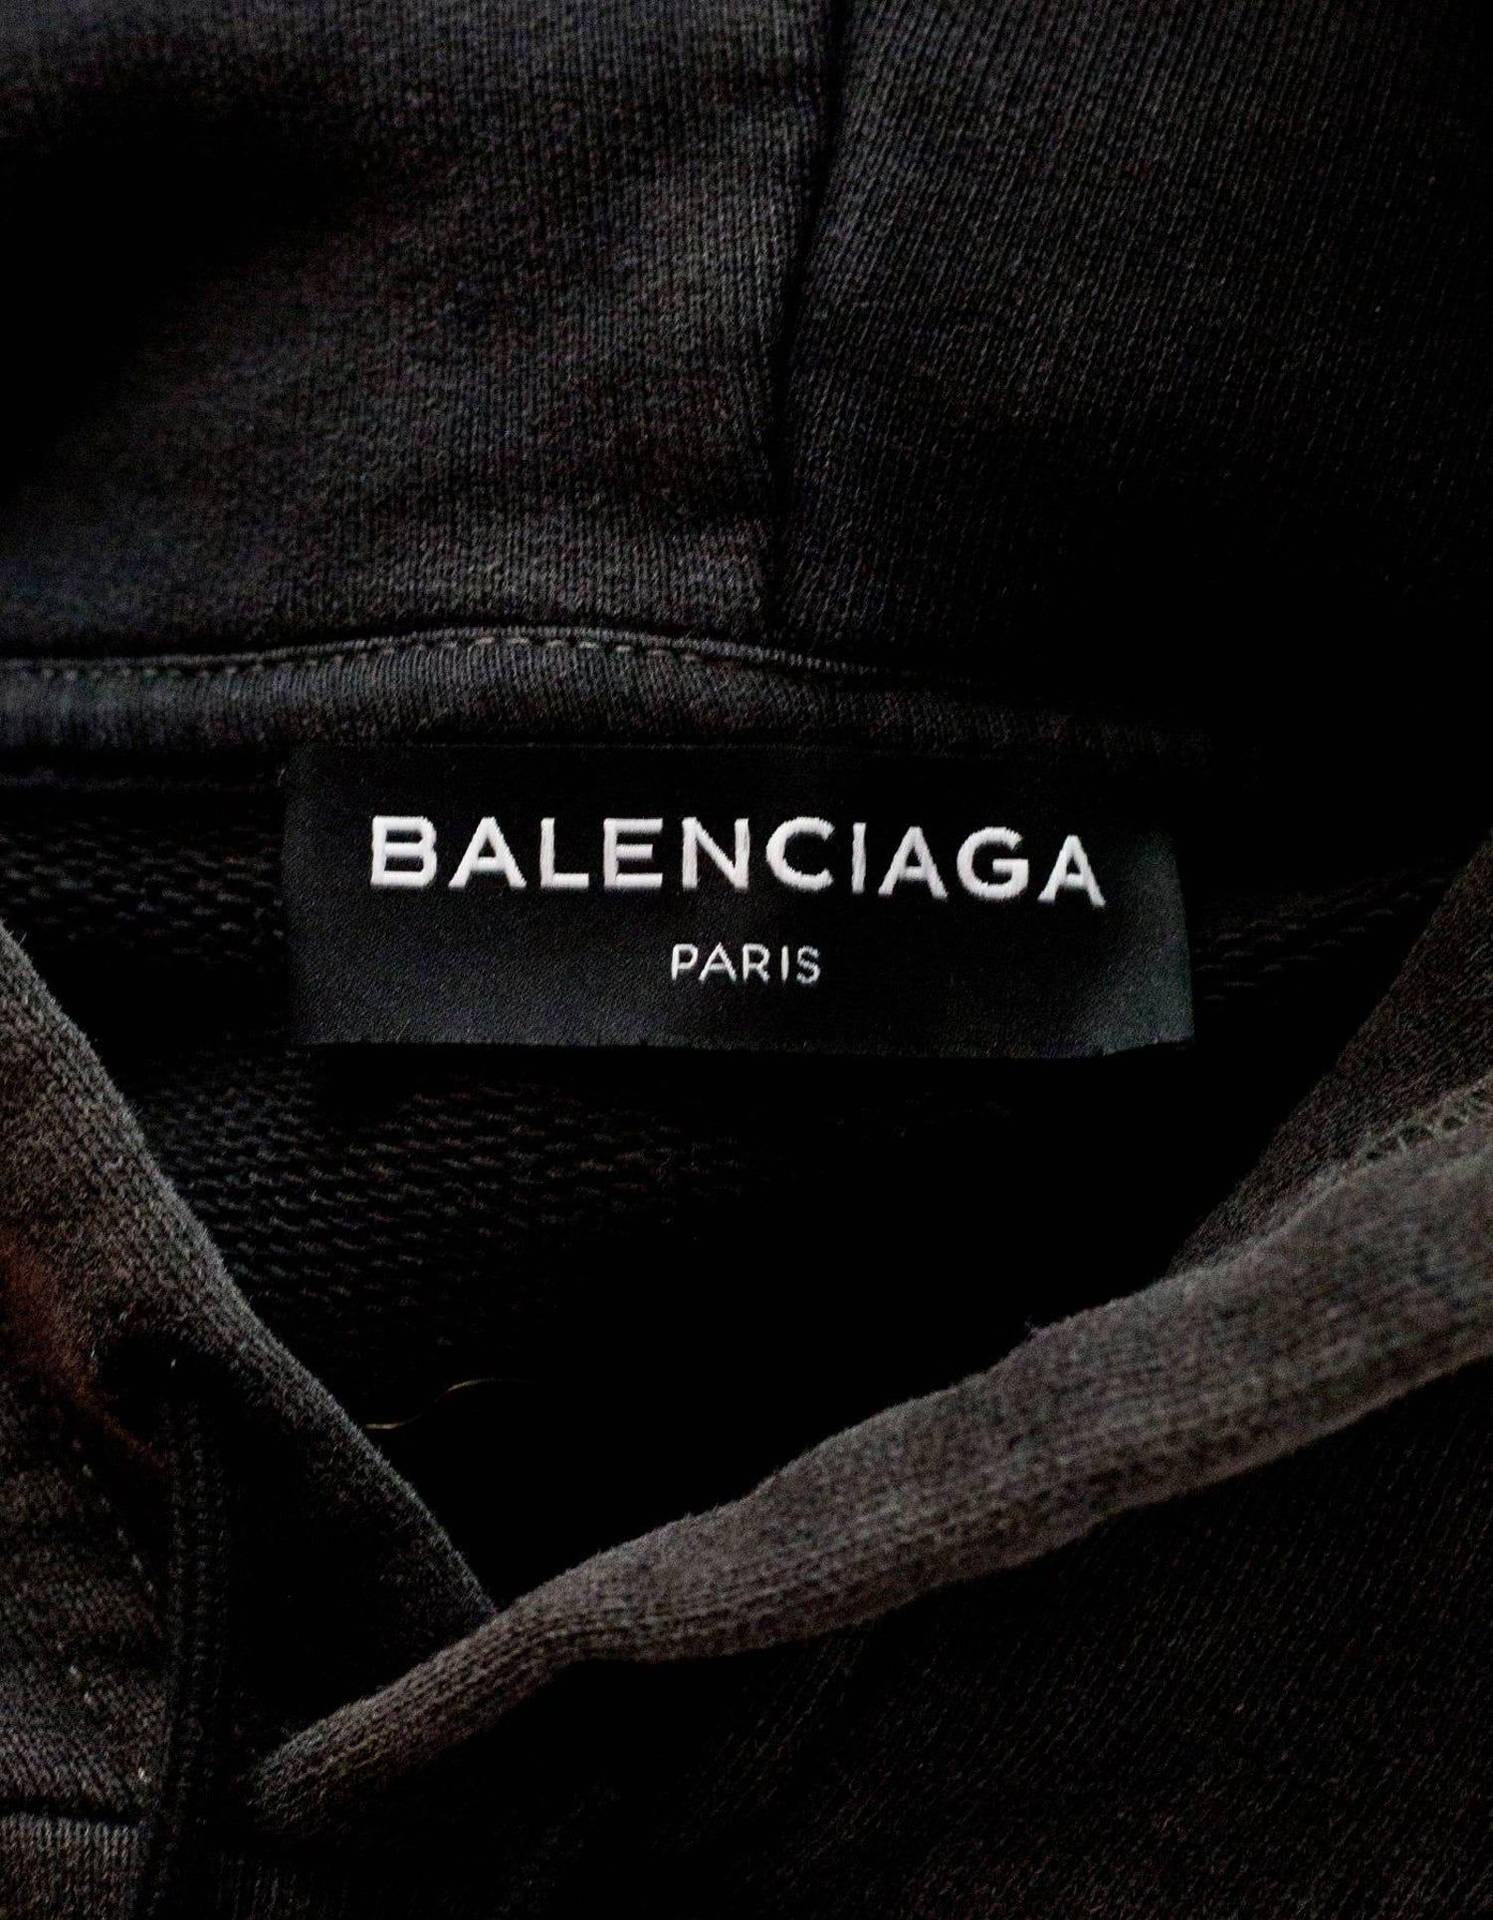 Balenciaga Clothing Tag Wallpaper